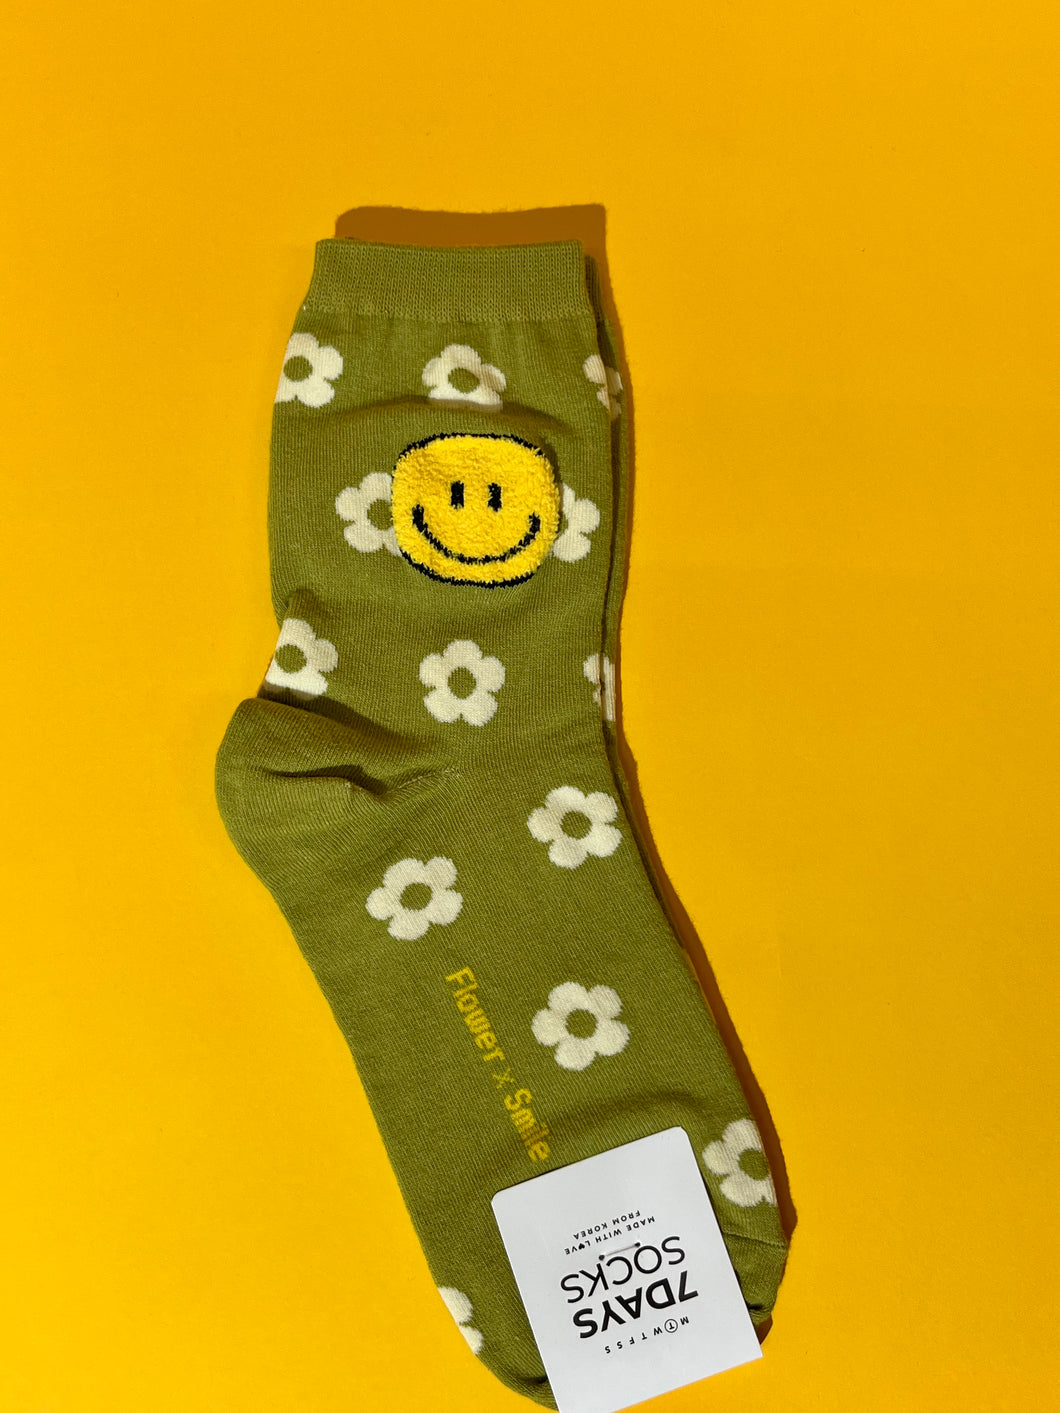 Flower x Smiley face socks